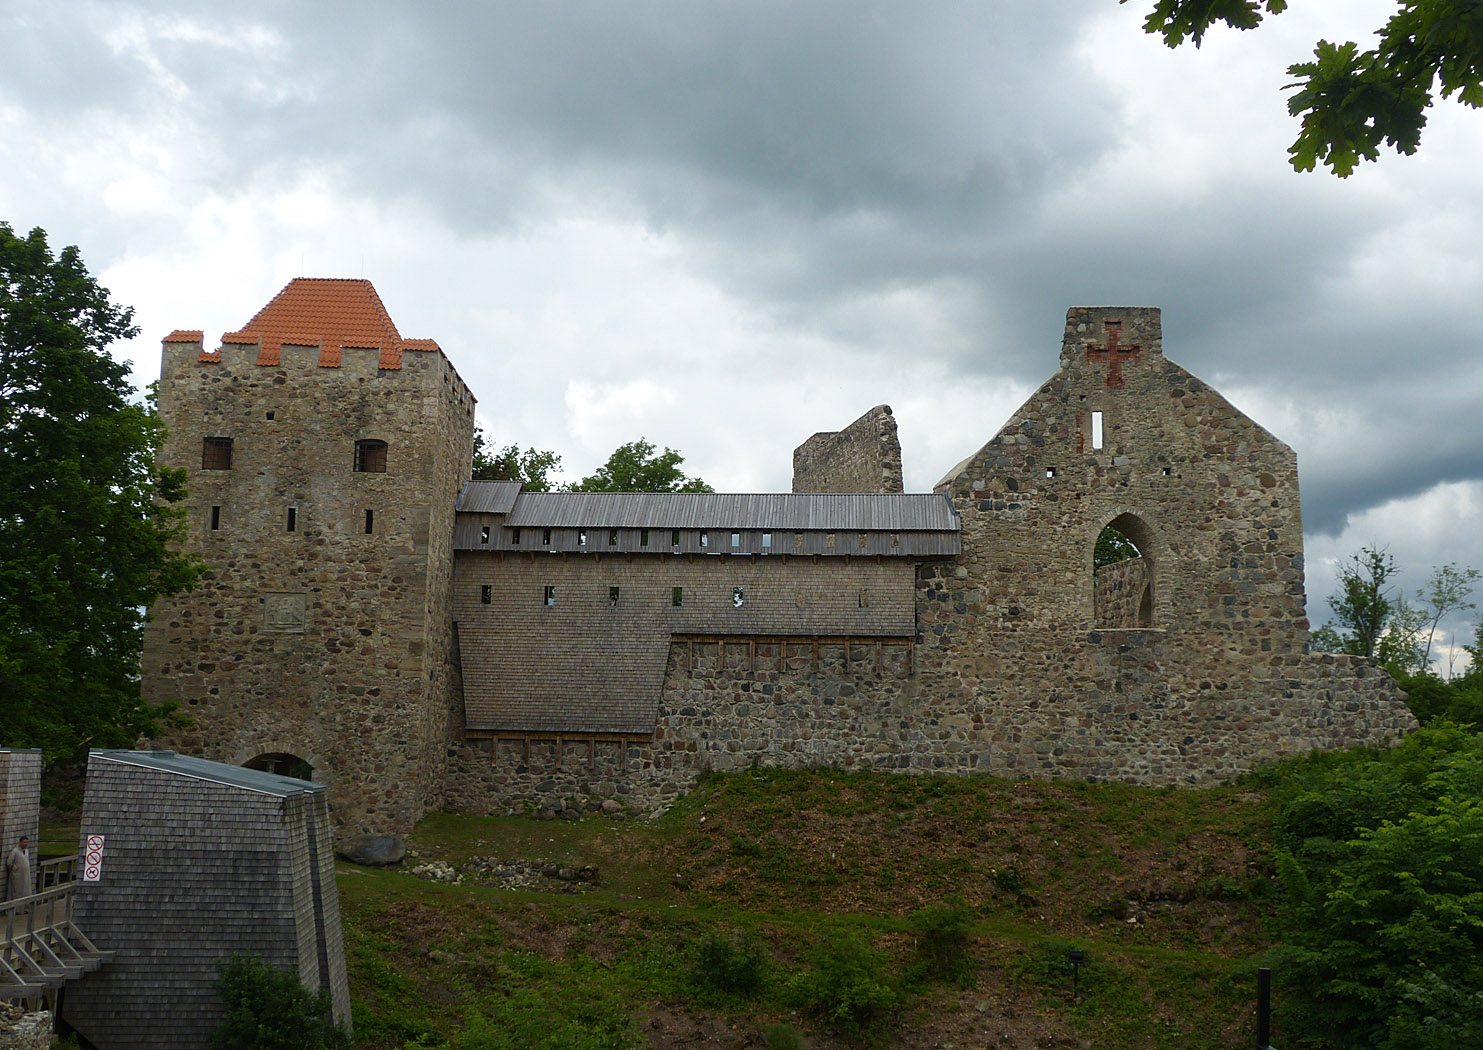 Sigulda Medieval Castle, Latvia